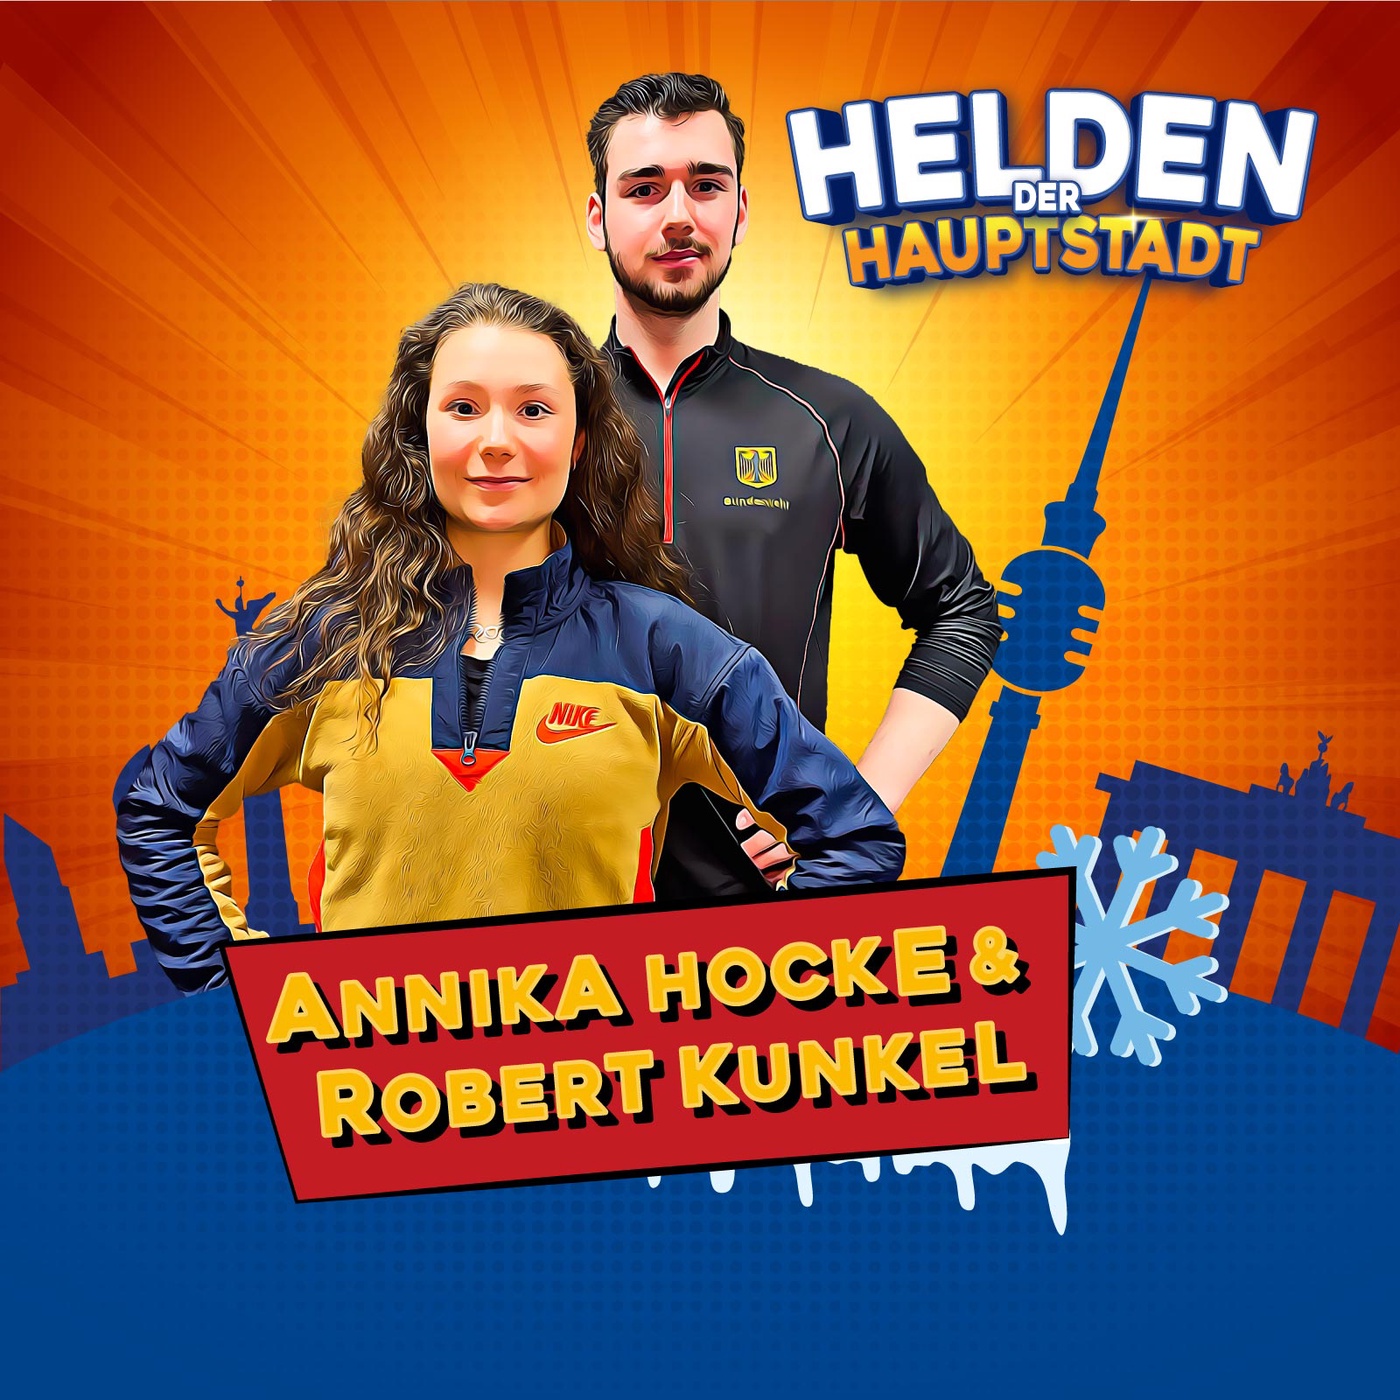 Annika Hocke und Robert Kunkel: Eiszeit in Berlin